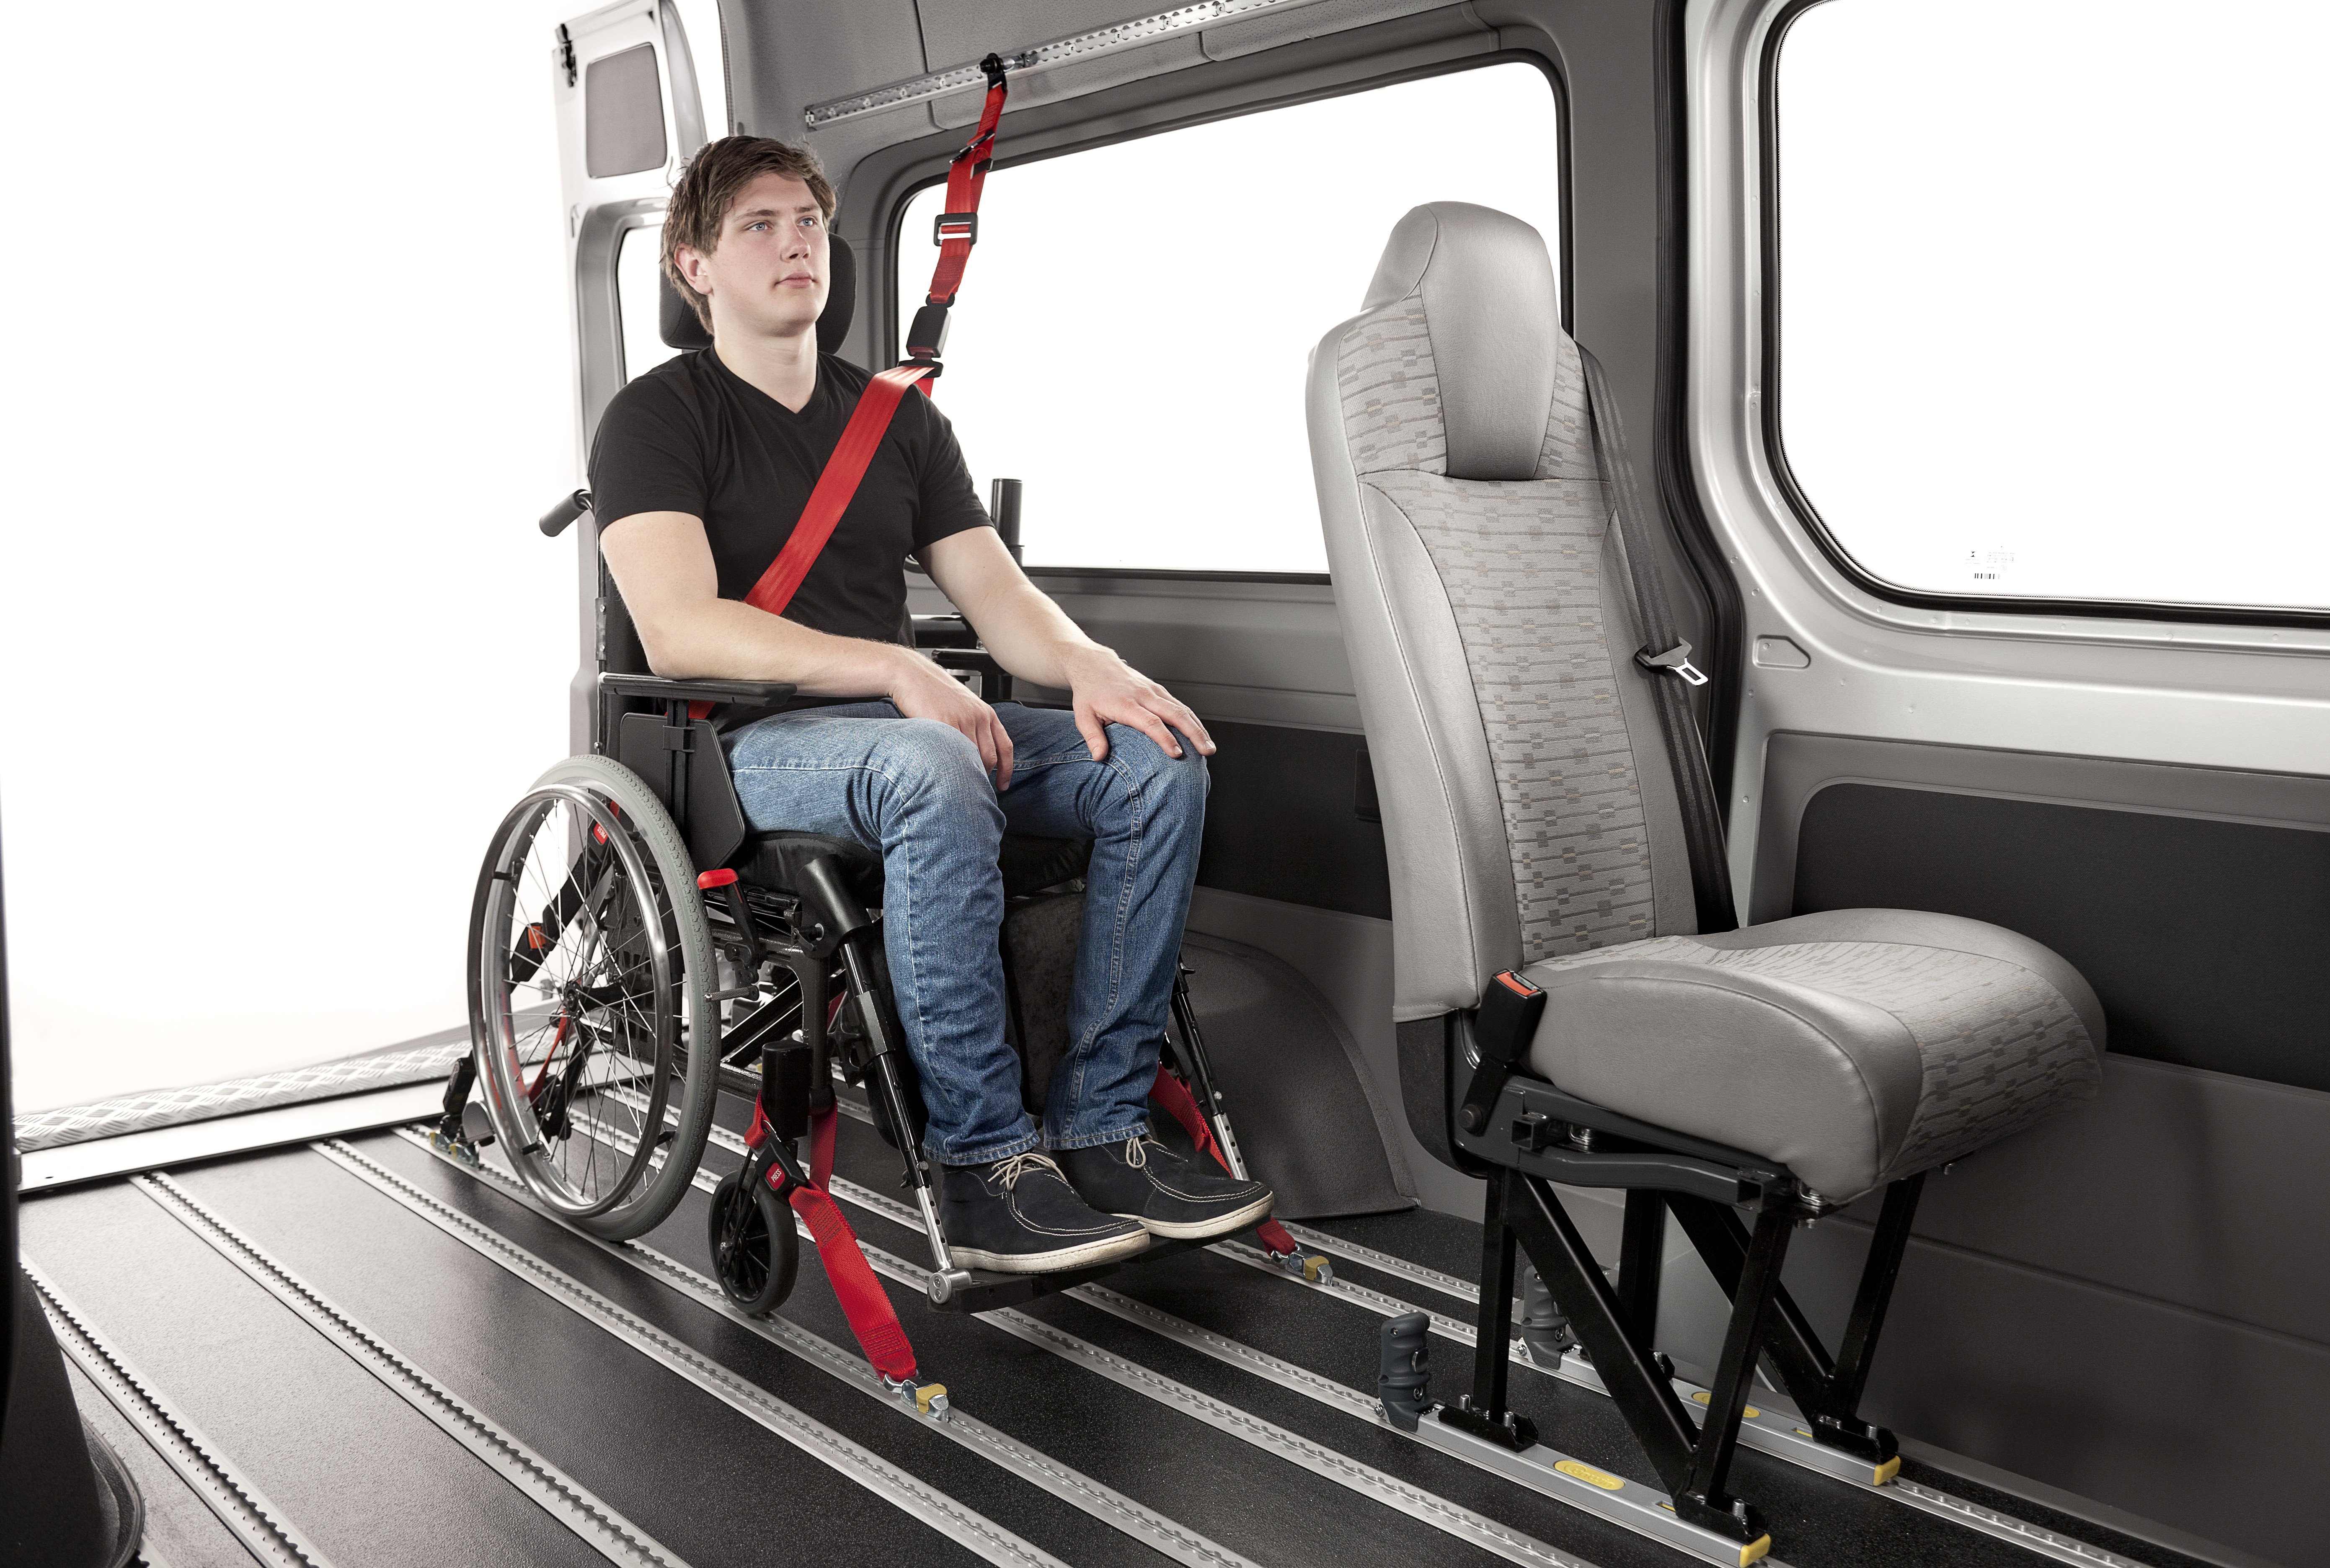 Перевозка пассажиров инвалидов. Система фиксации инвалидной коляски в транспорте. Fiat Ducato для перевозки инвалидов. Транспорт для инвалидов. Приспособления для инвалидов колясочников.